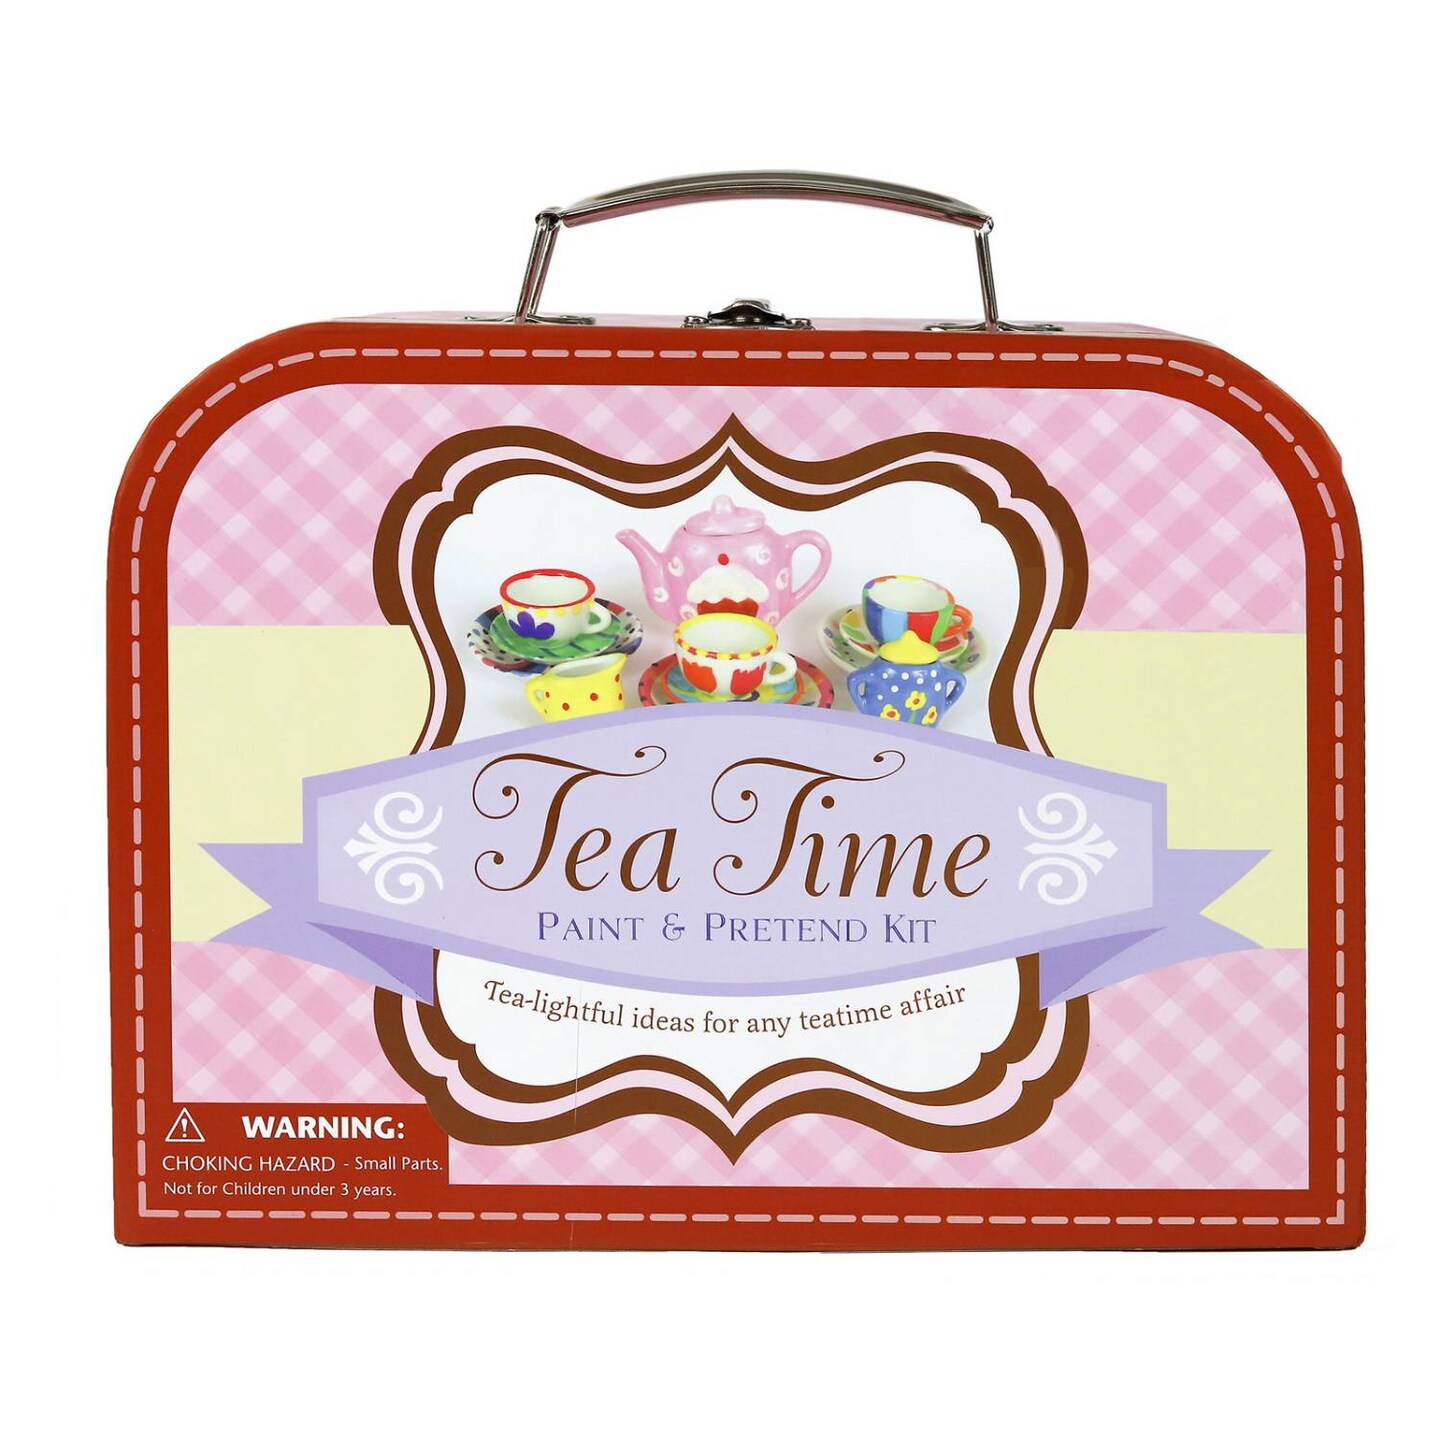 SpiceBox Tea Time Paint &#x26; Pretend Kit Suitcase Children&#x27;s Tea Set Pretend Play